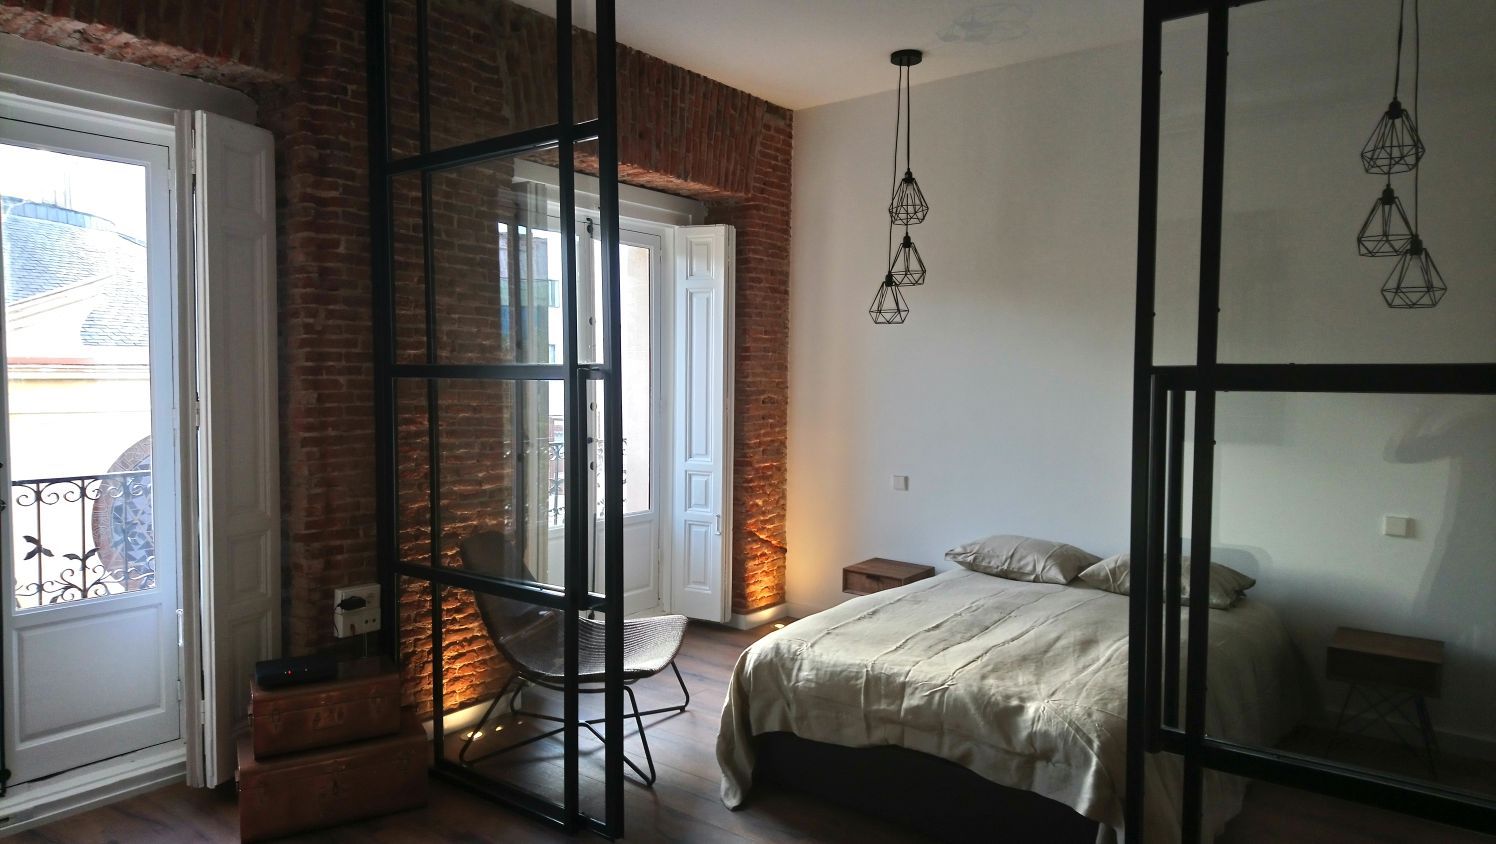 Apartamento turístico en La Latina, GARMA+ZAMBRANO Arquitectura GARMA+ZAMBRANO Arquitectura Bedroom